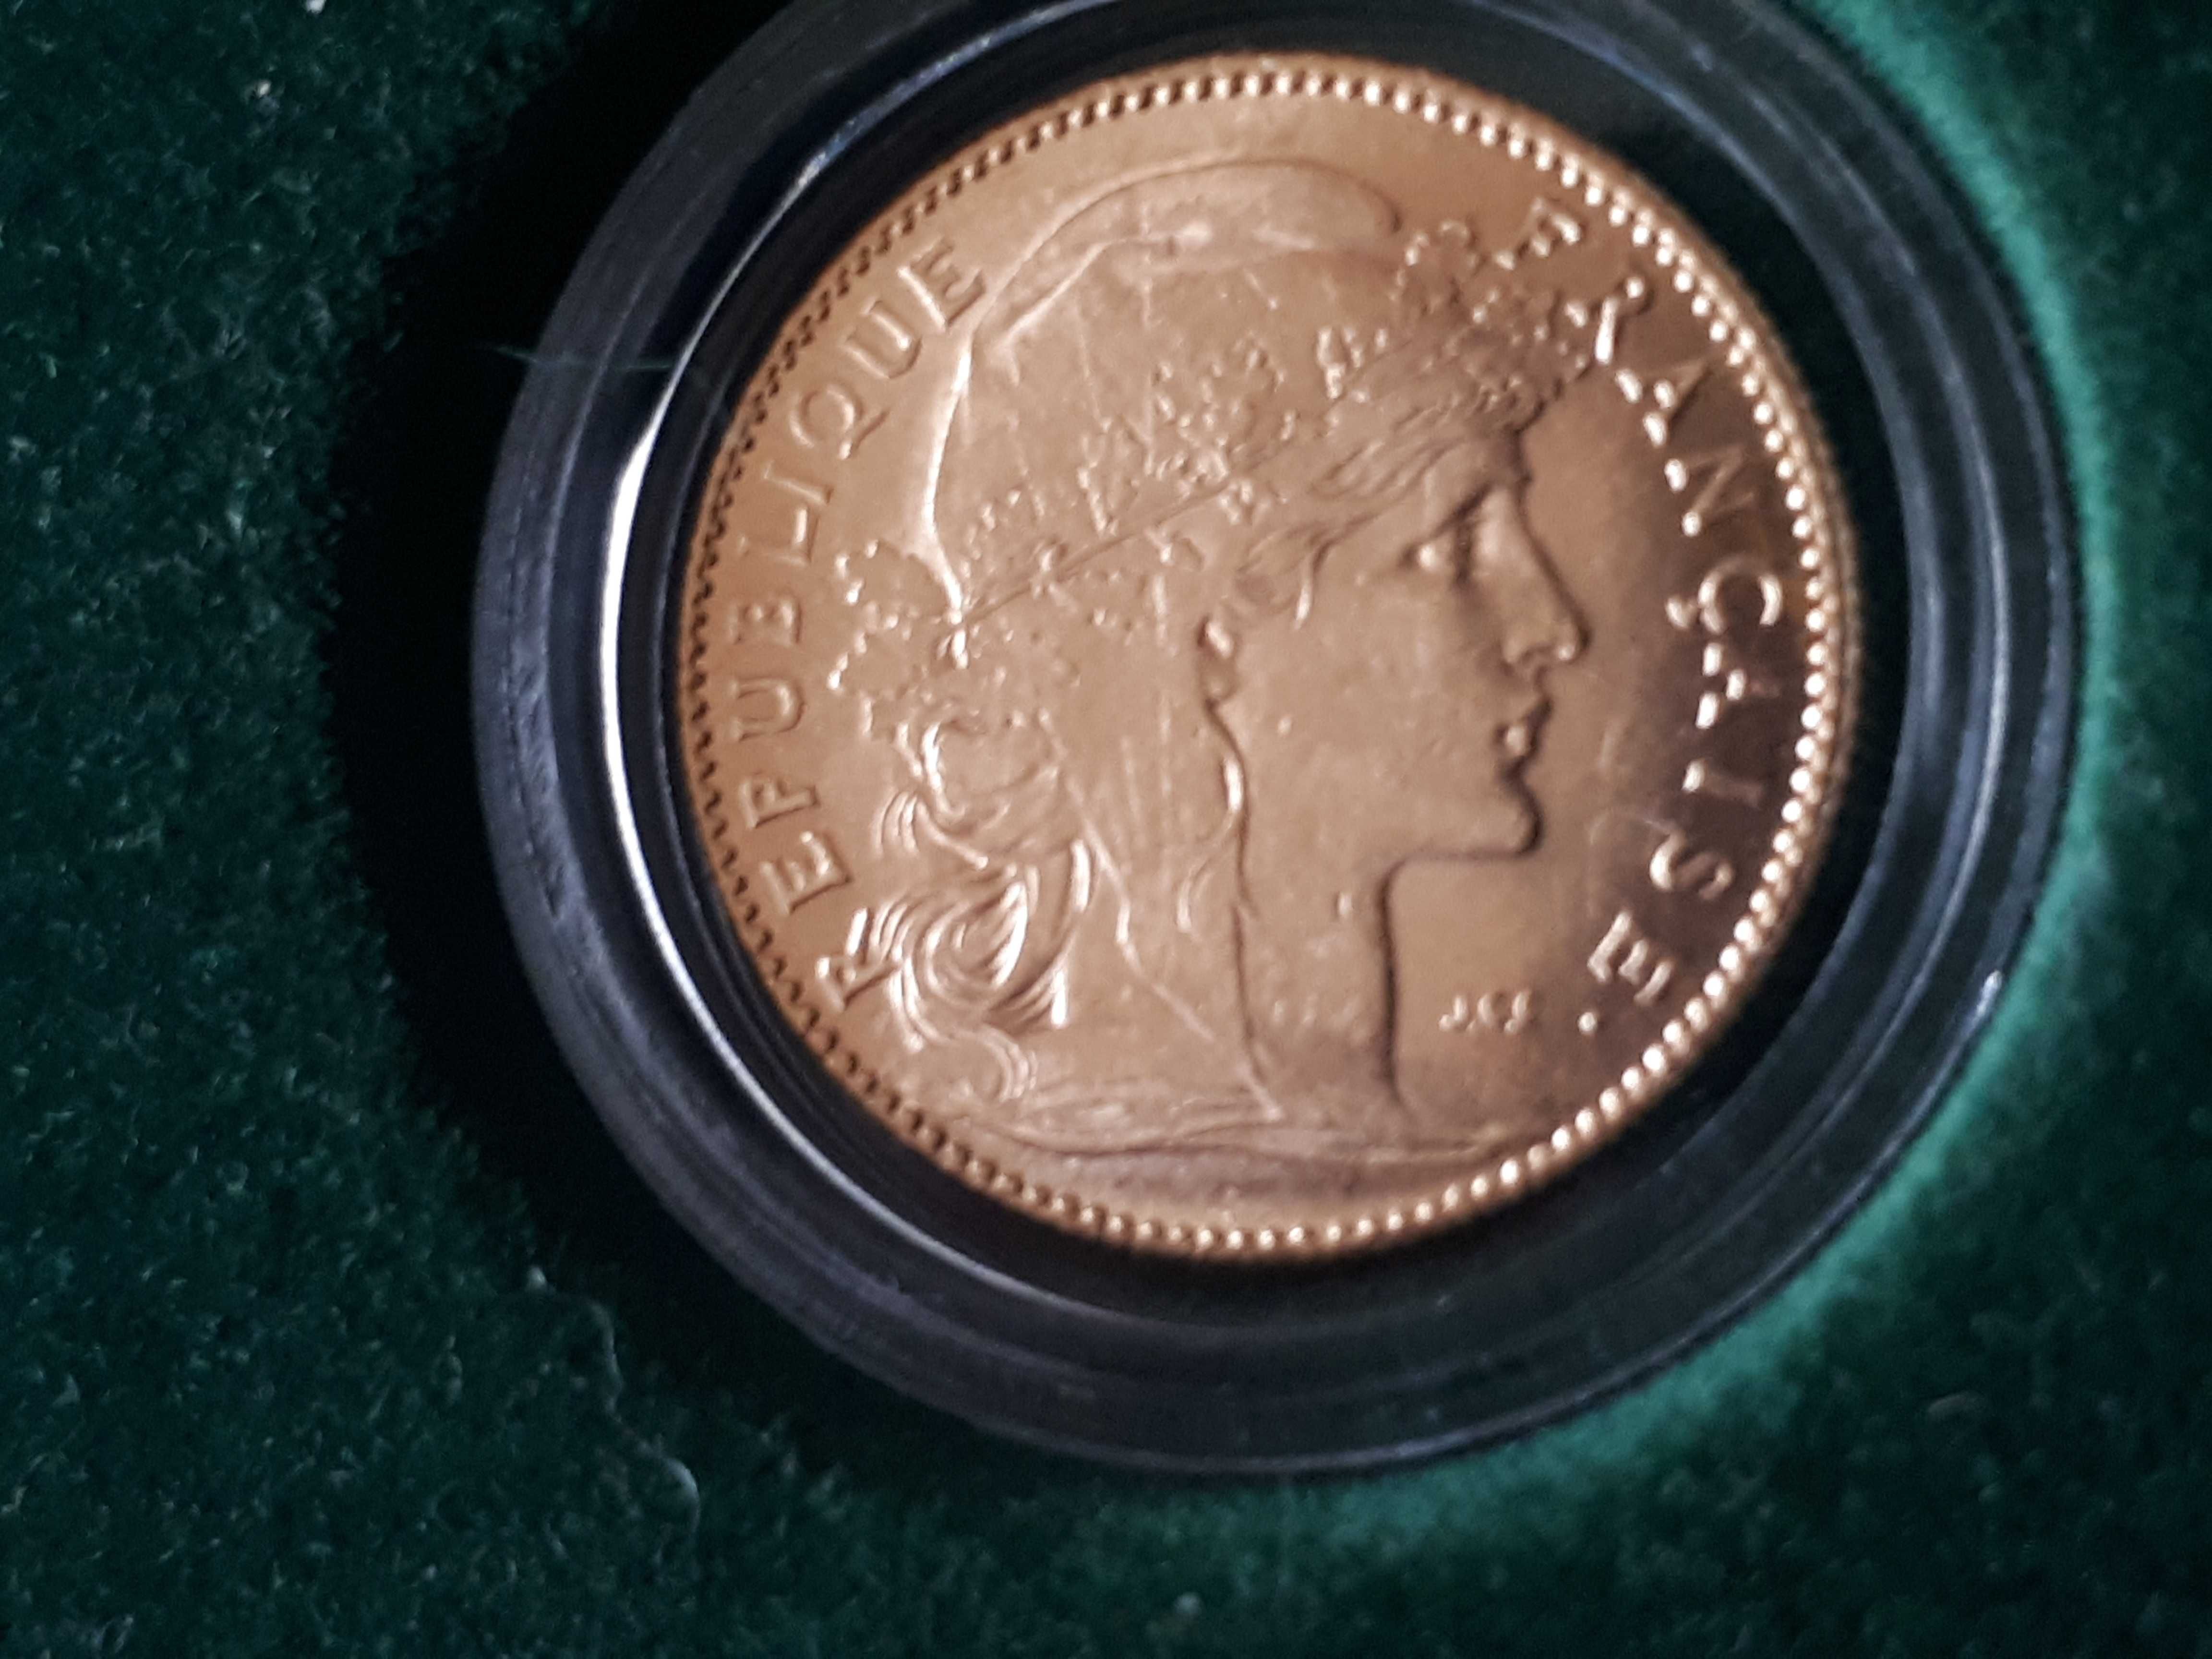 Złota Moneta - 10 franków - Liberte - KOGUT 1901r Francja obniżka